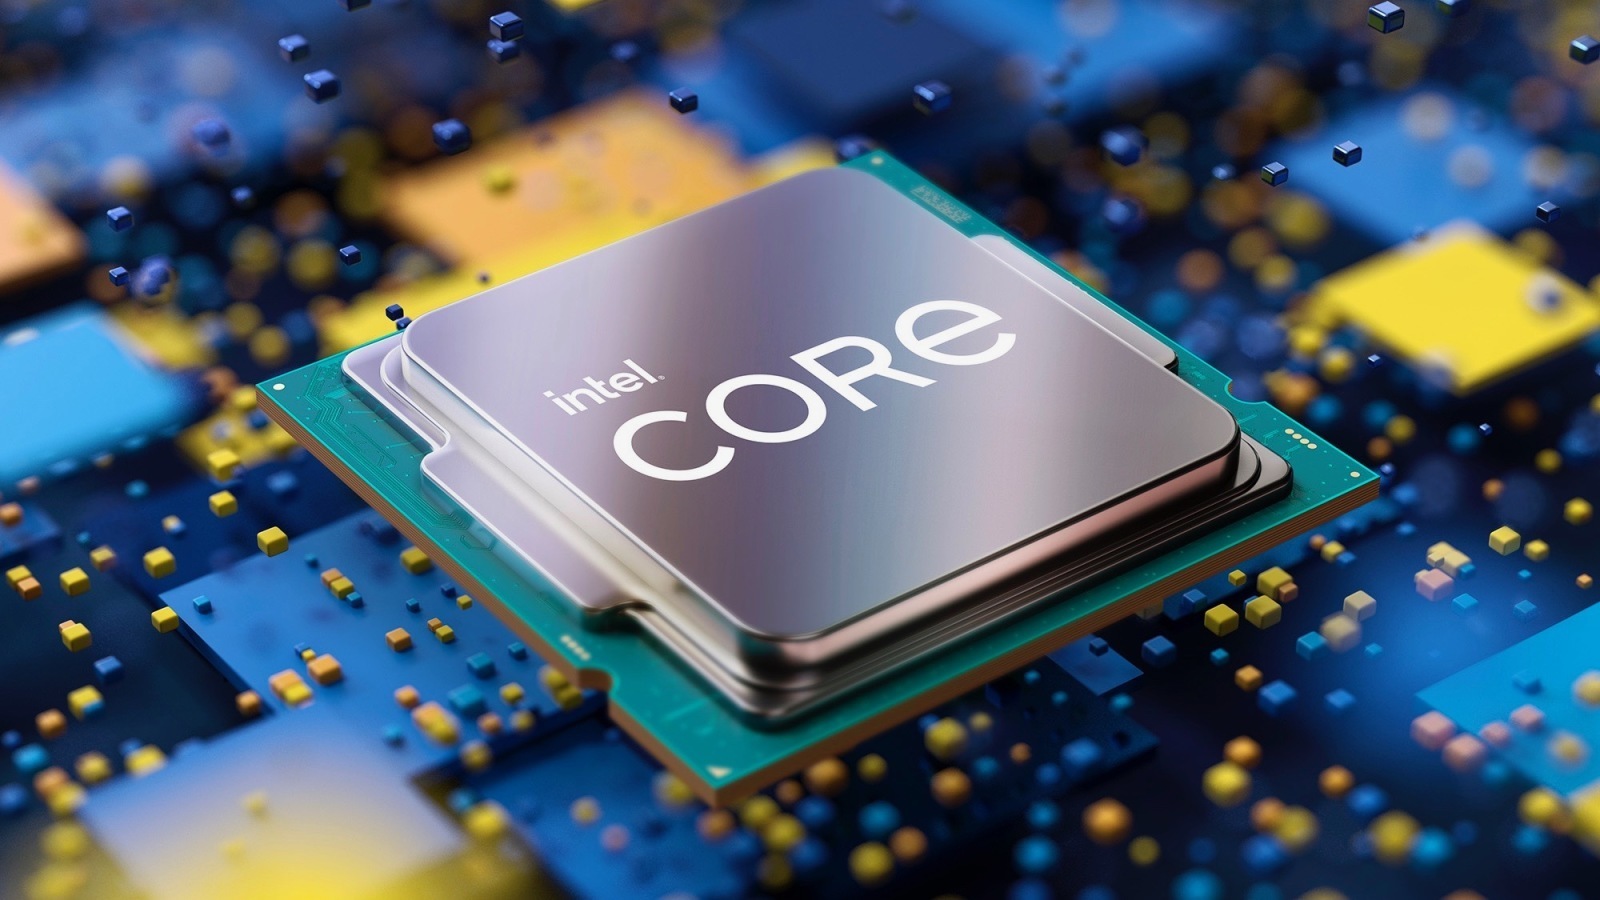 Alder Lake Leak: Intel Core i9-12900K Offers 5.3GHz Boost Clock, Lower PL2